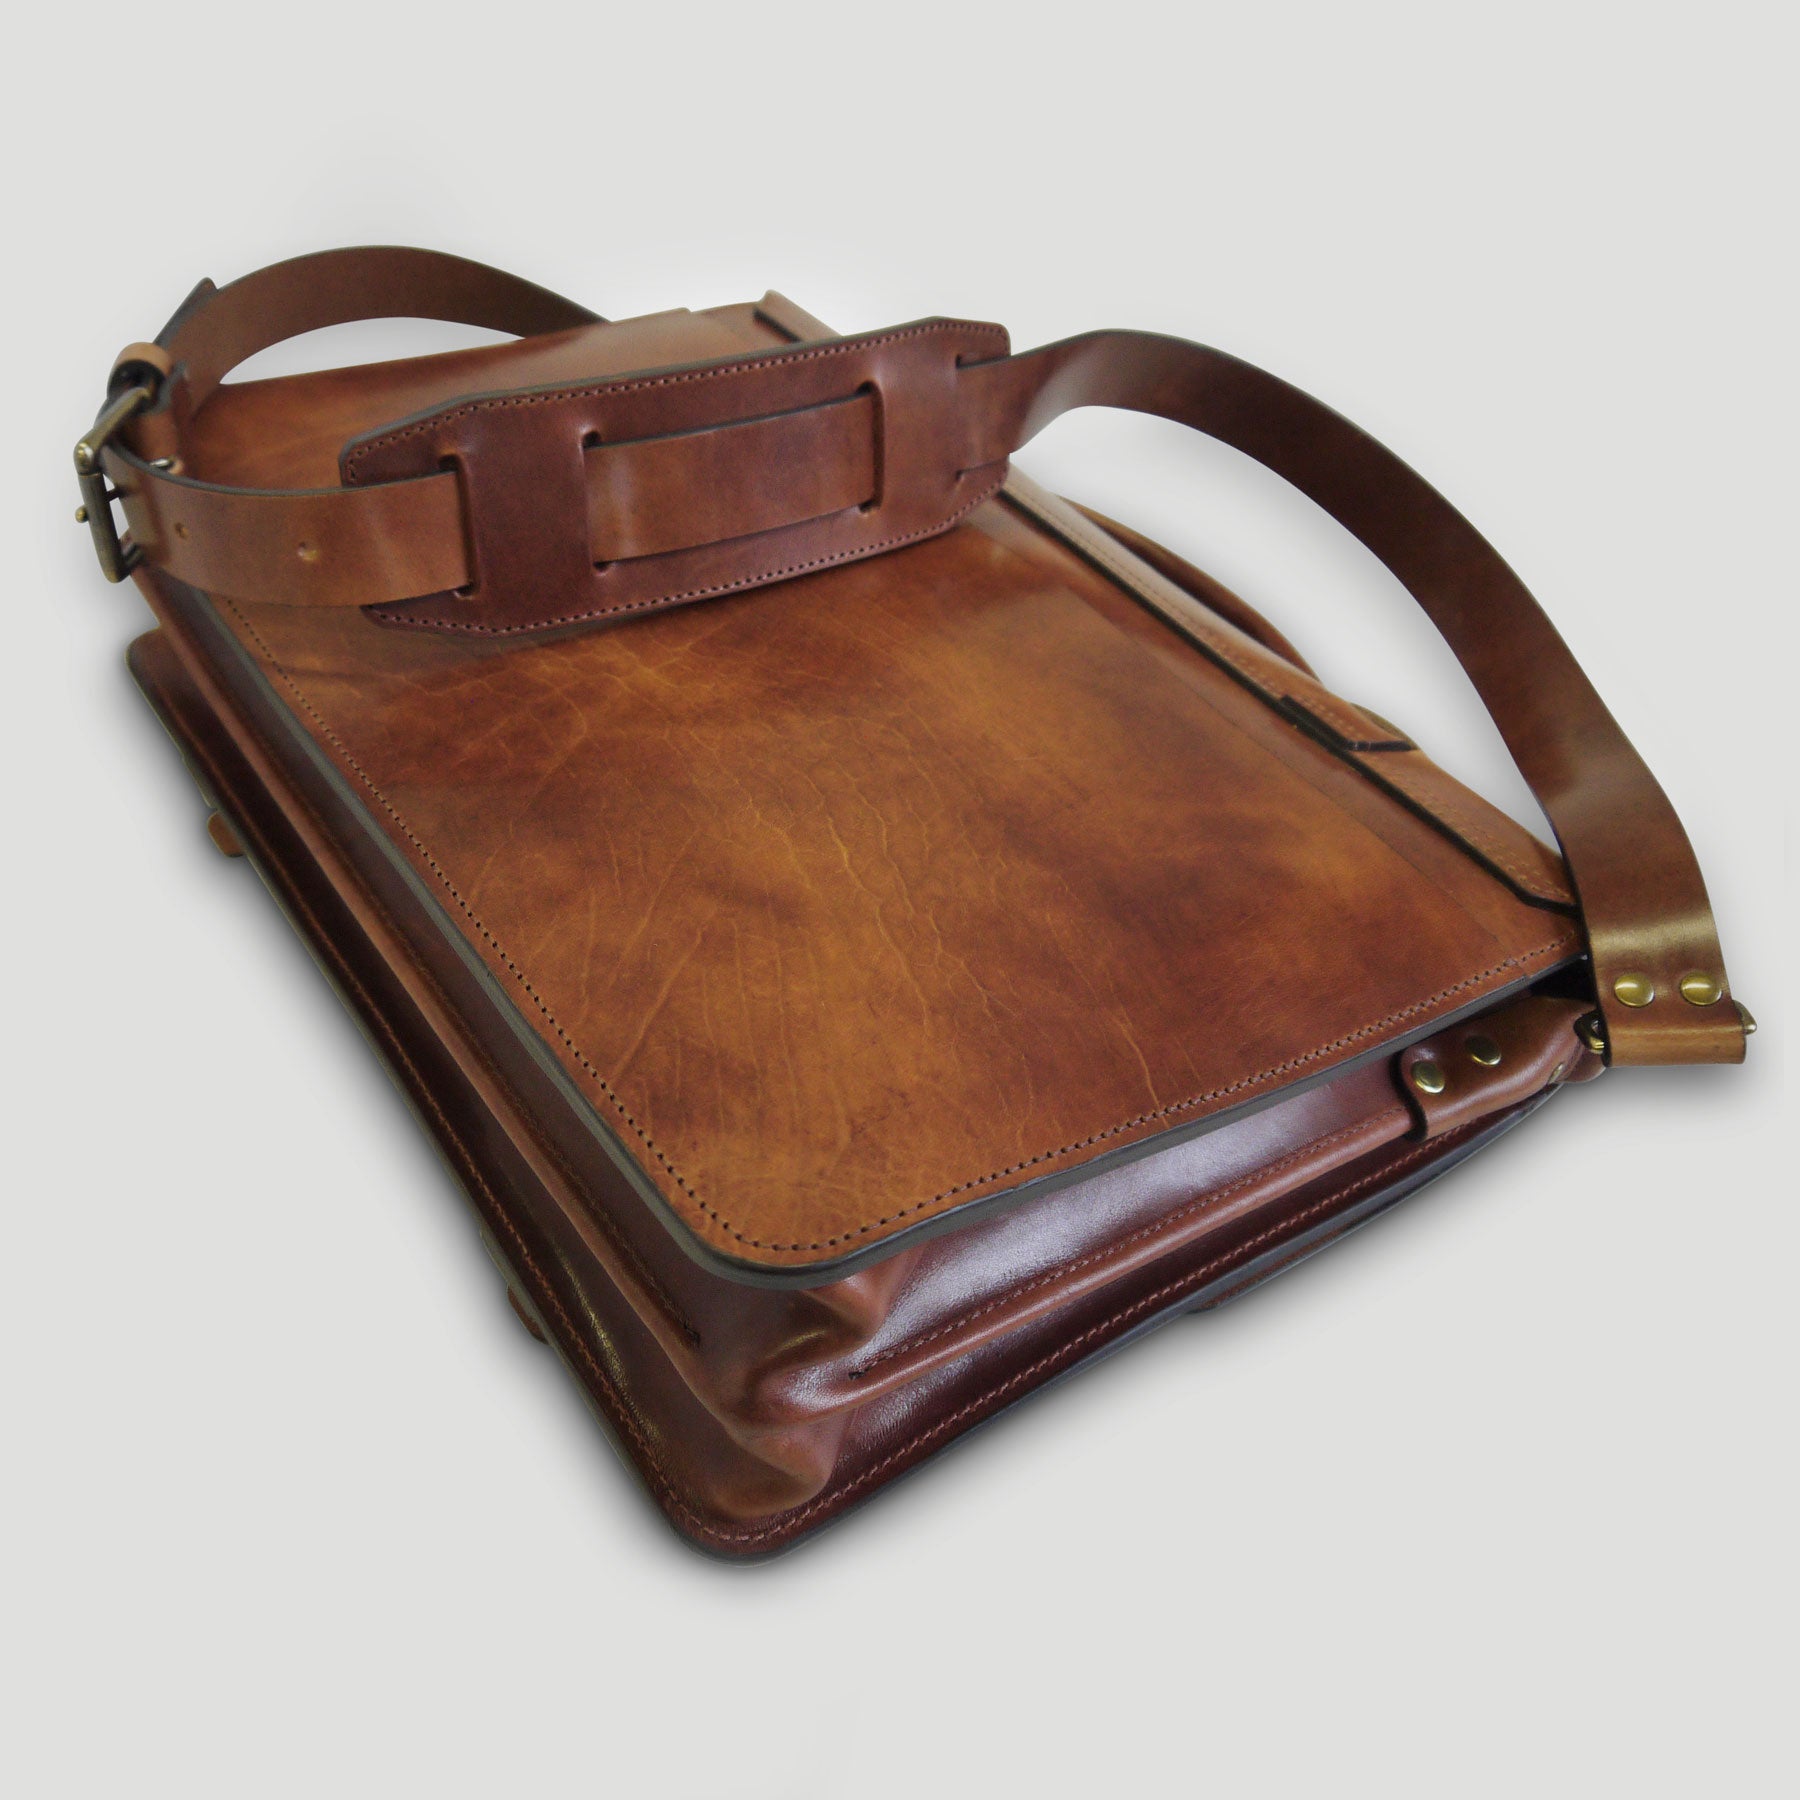 OBag O Bag Folder Messenger Bag With Real Leather Flap READ DESCRIPTION